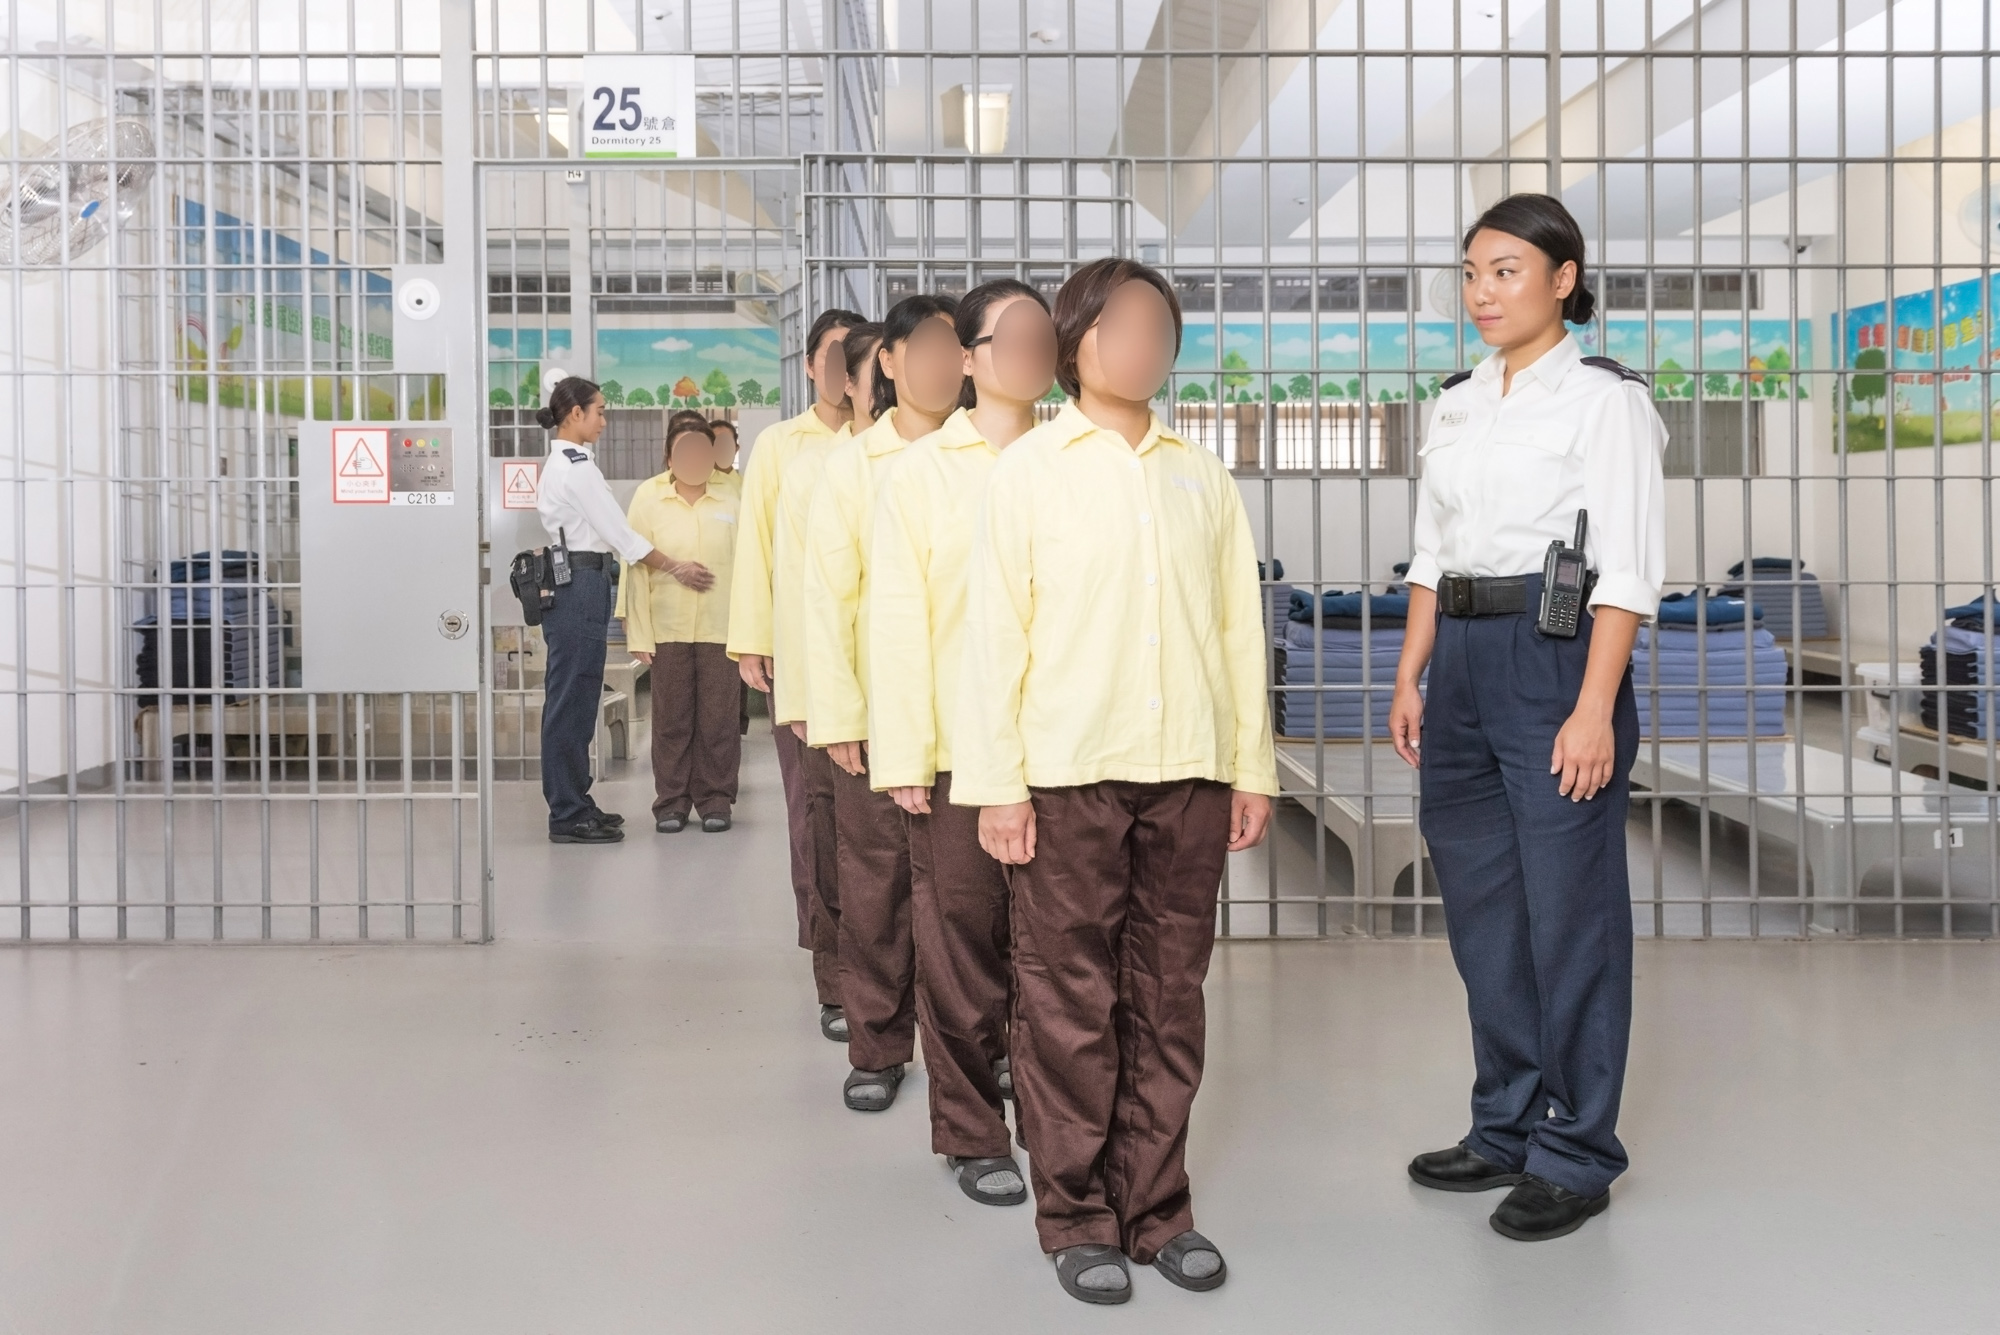 懲教人員監管在囚人士，以維持院所秩序。